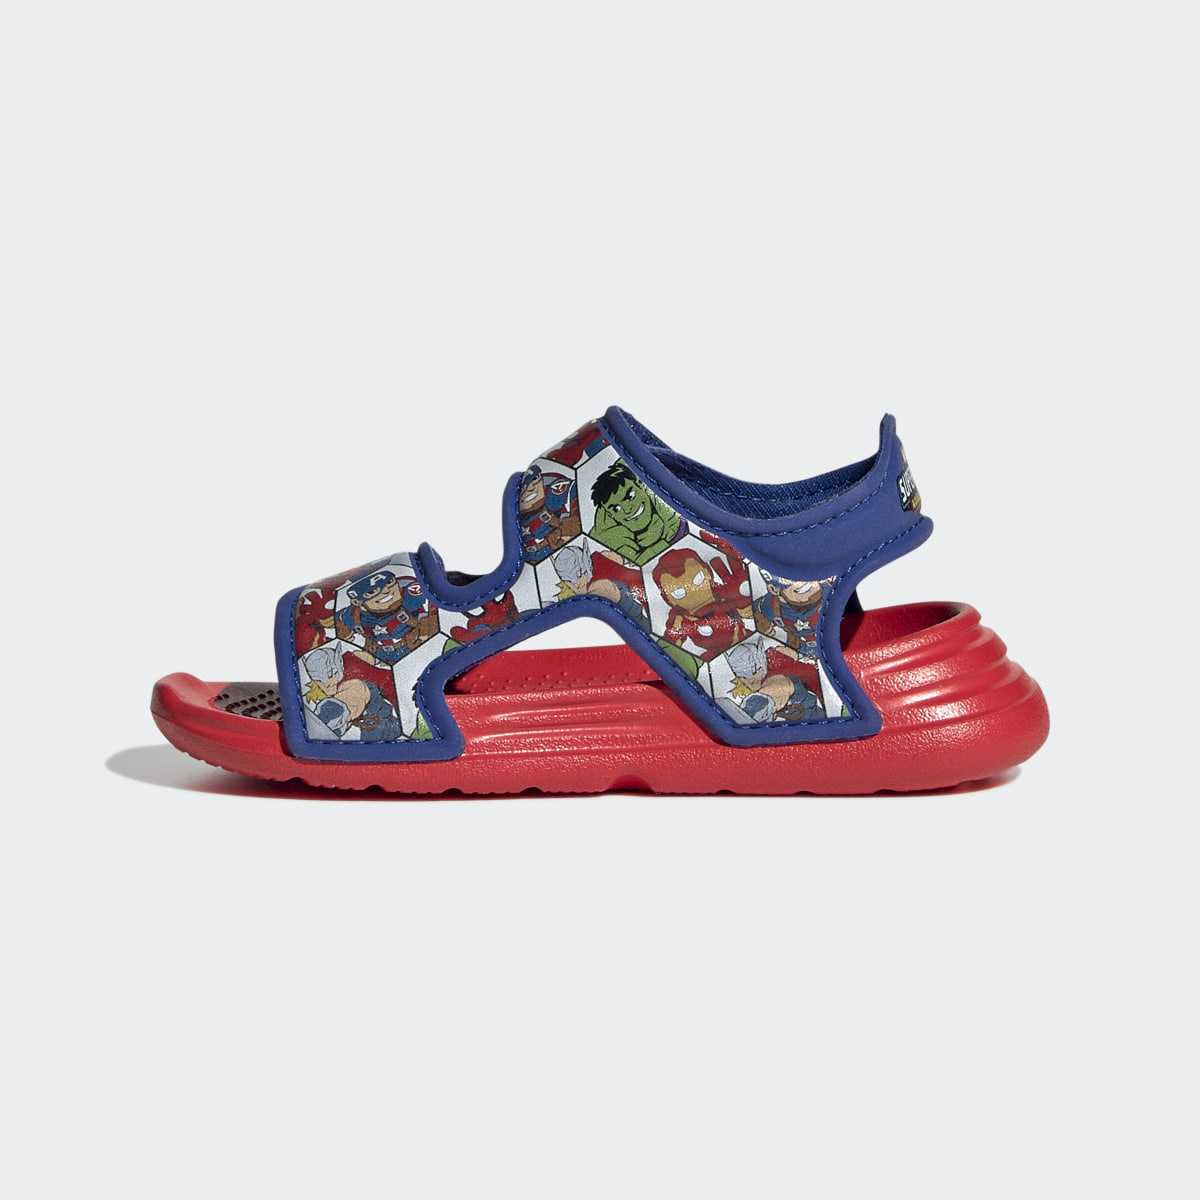 Adidas x Marvel AltaSwim Super Hero Adventures Sandals. 7